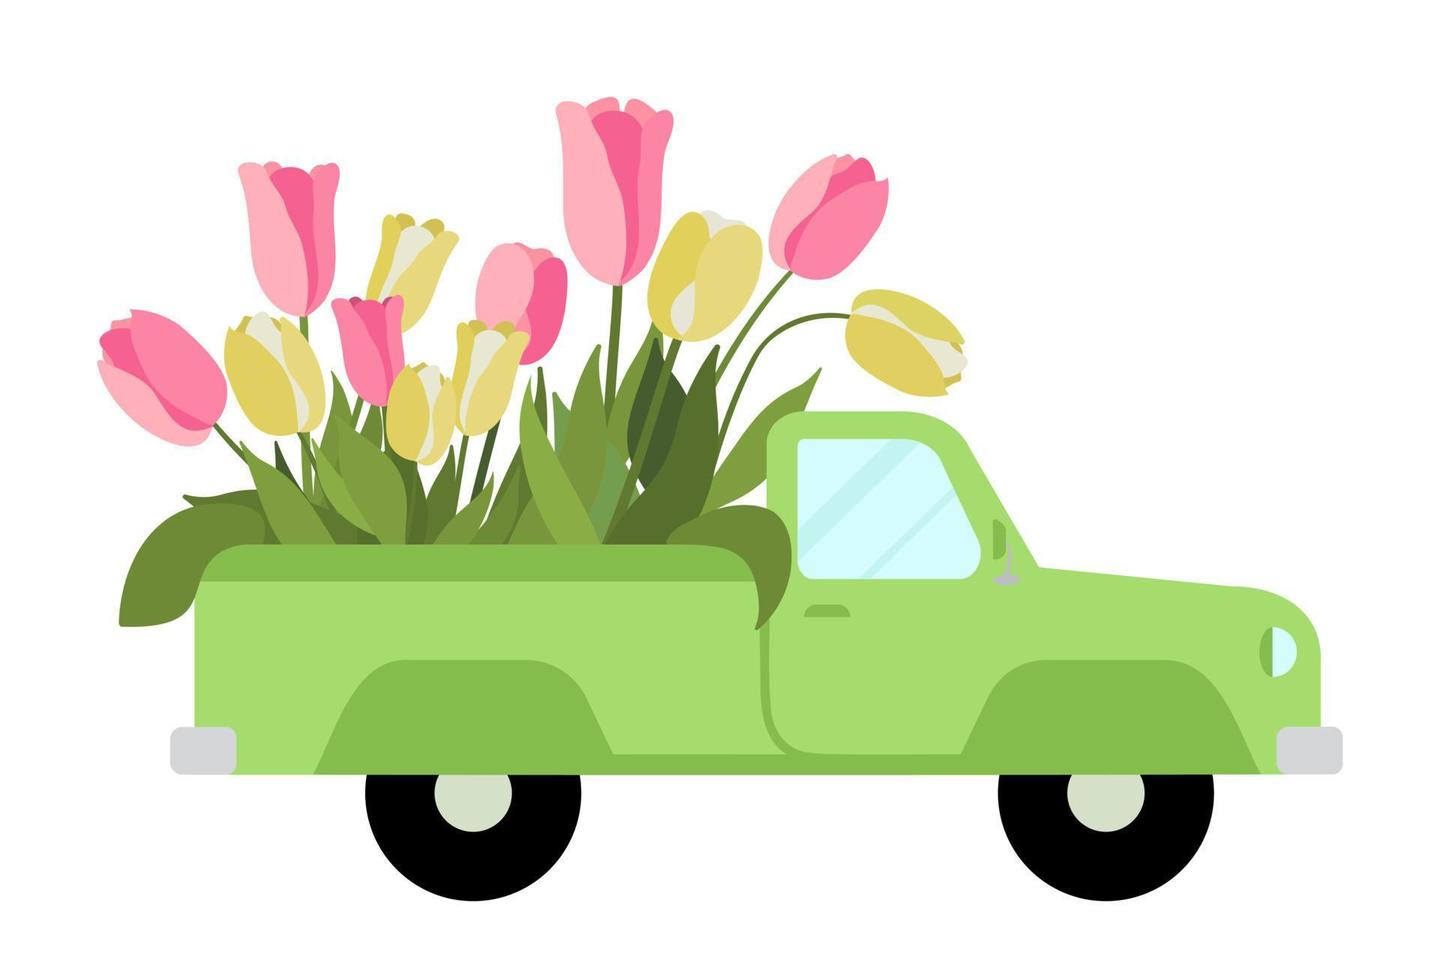 una camioneta retro verde con flores tulipanes rosas y amarillos. aislado sobre fondo blanco. ilustración de vector de coche vintage pintado a mano. perfecto para tarjetas, invitaciones de boda y saludos de primavera